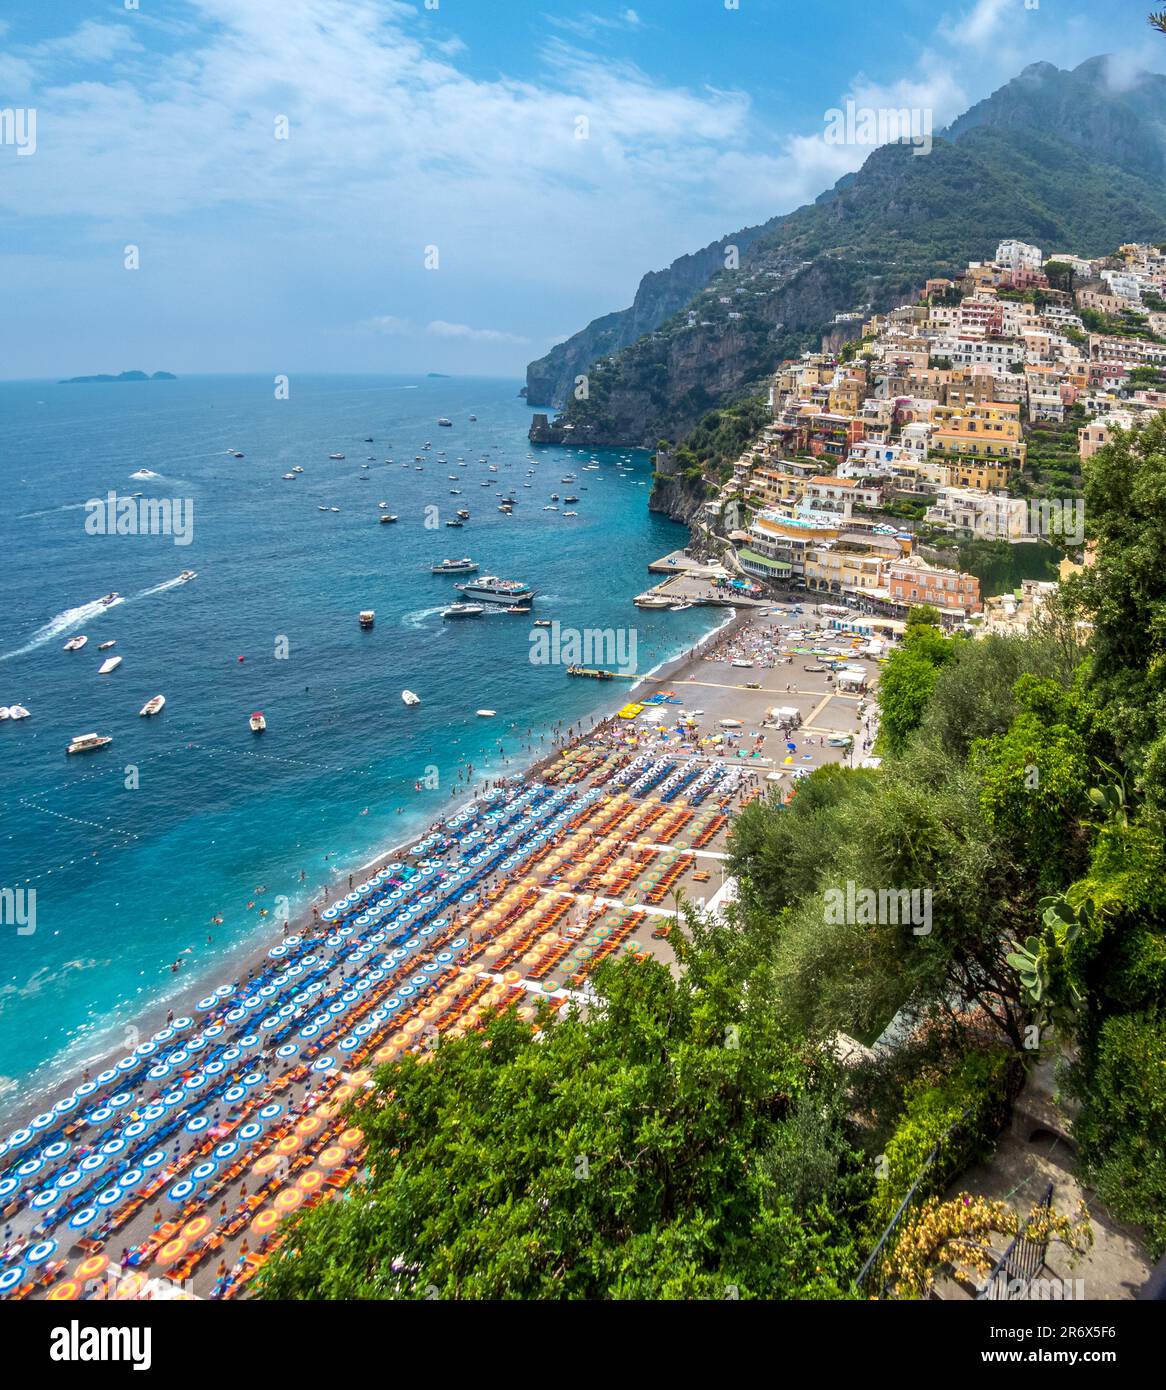 Positano, precioso pueblo de la costa amalfitana, para descubrir sus rincones, lo mejor pasear y subir a sus magníficos miradores, Italien Stockfoto